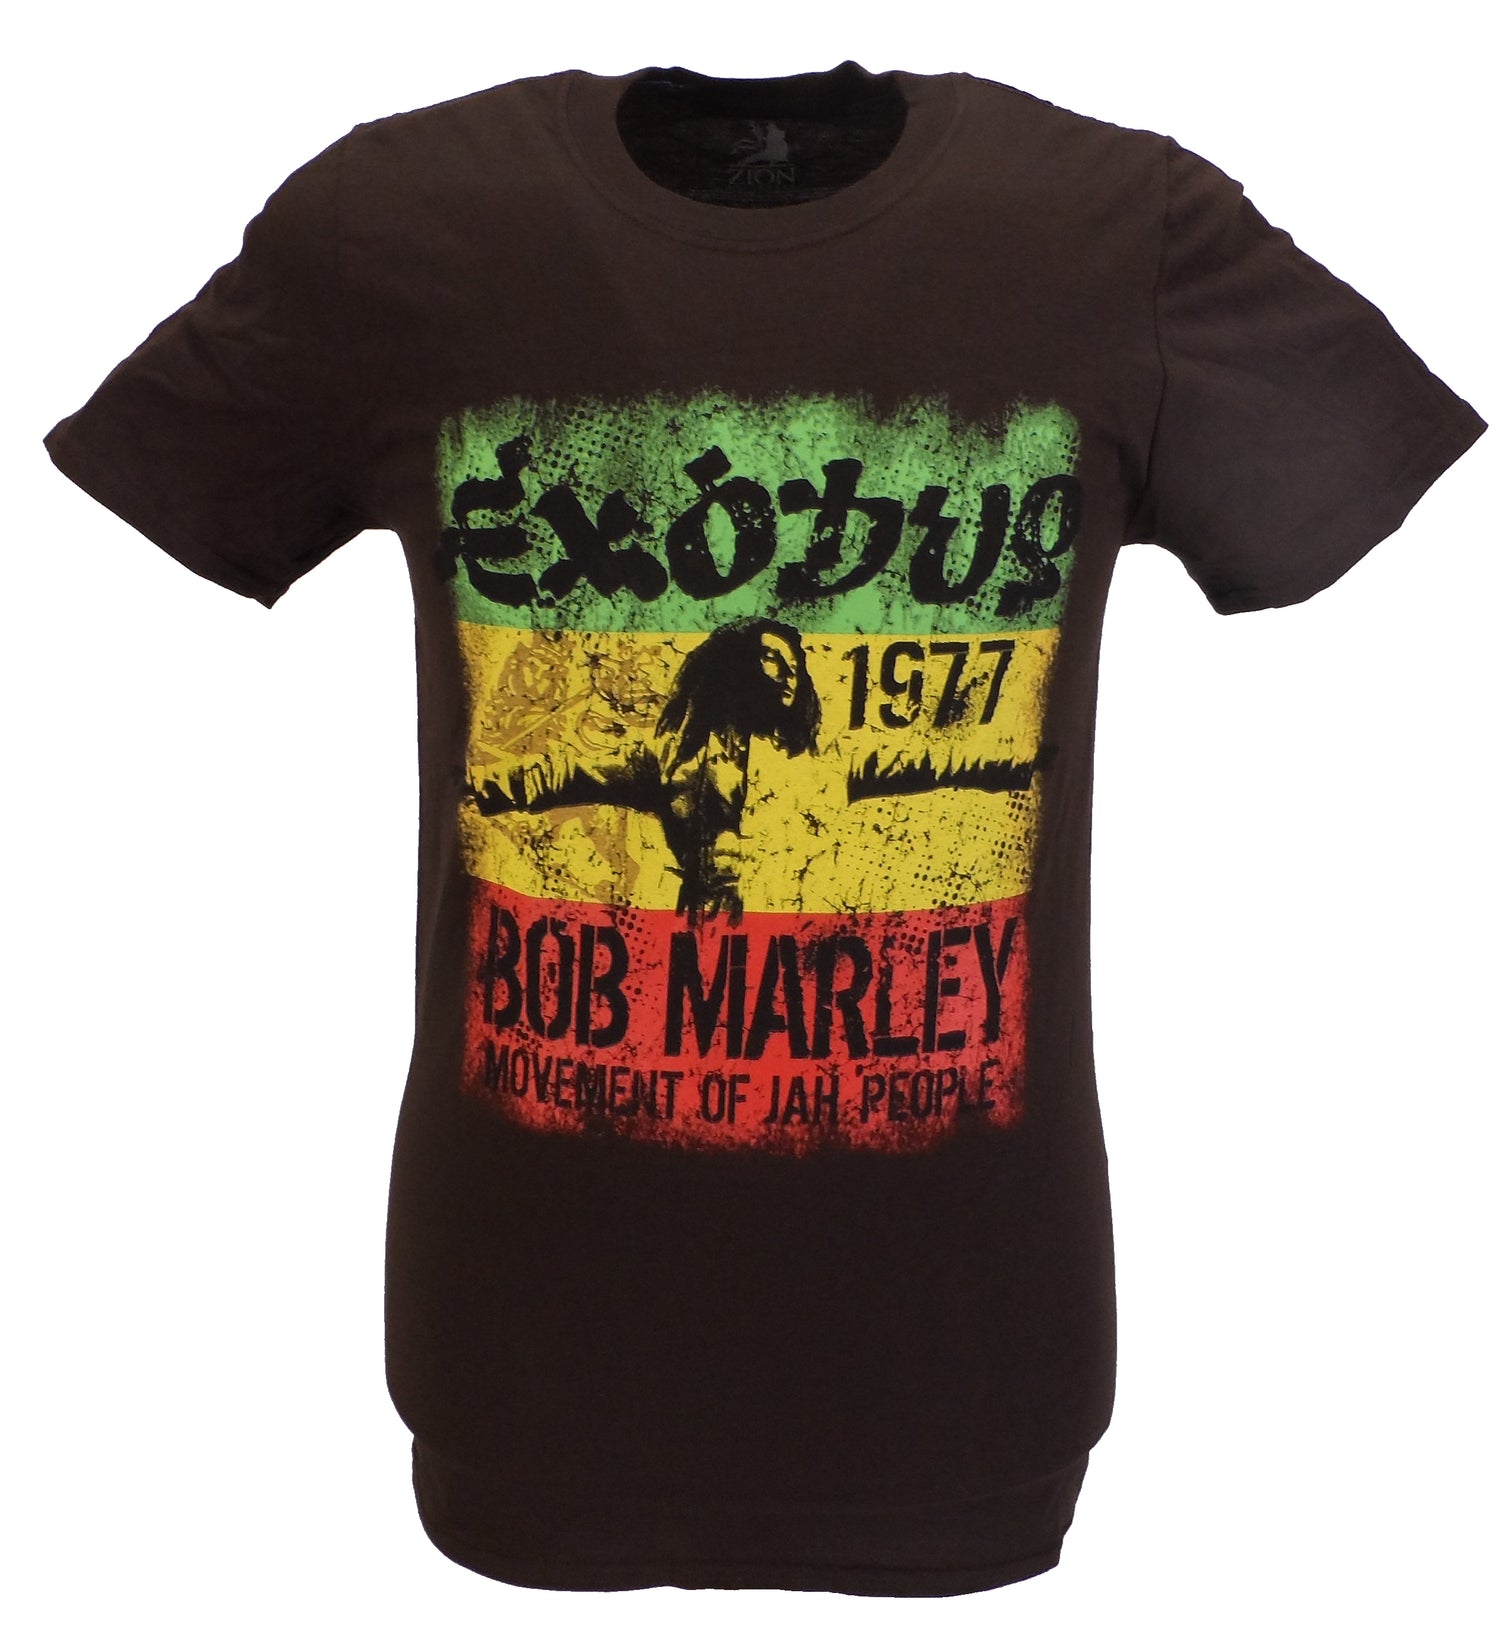 Bob Marley T-Shirts & Clothing